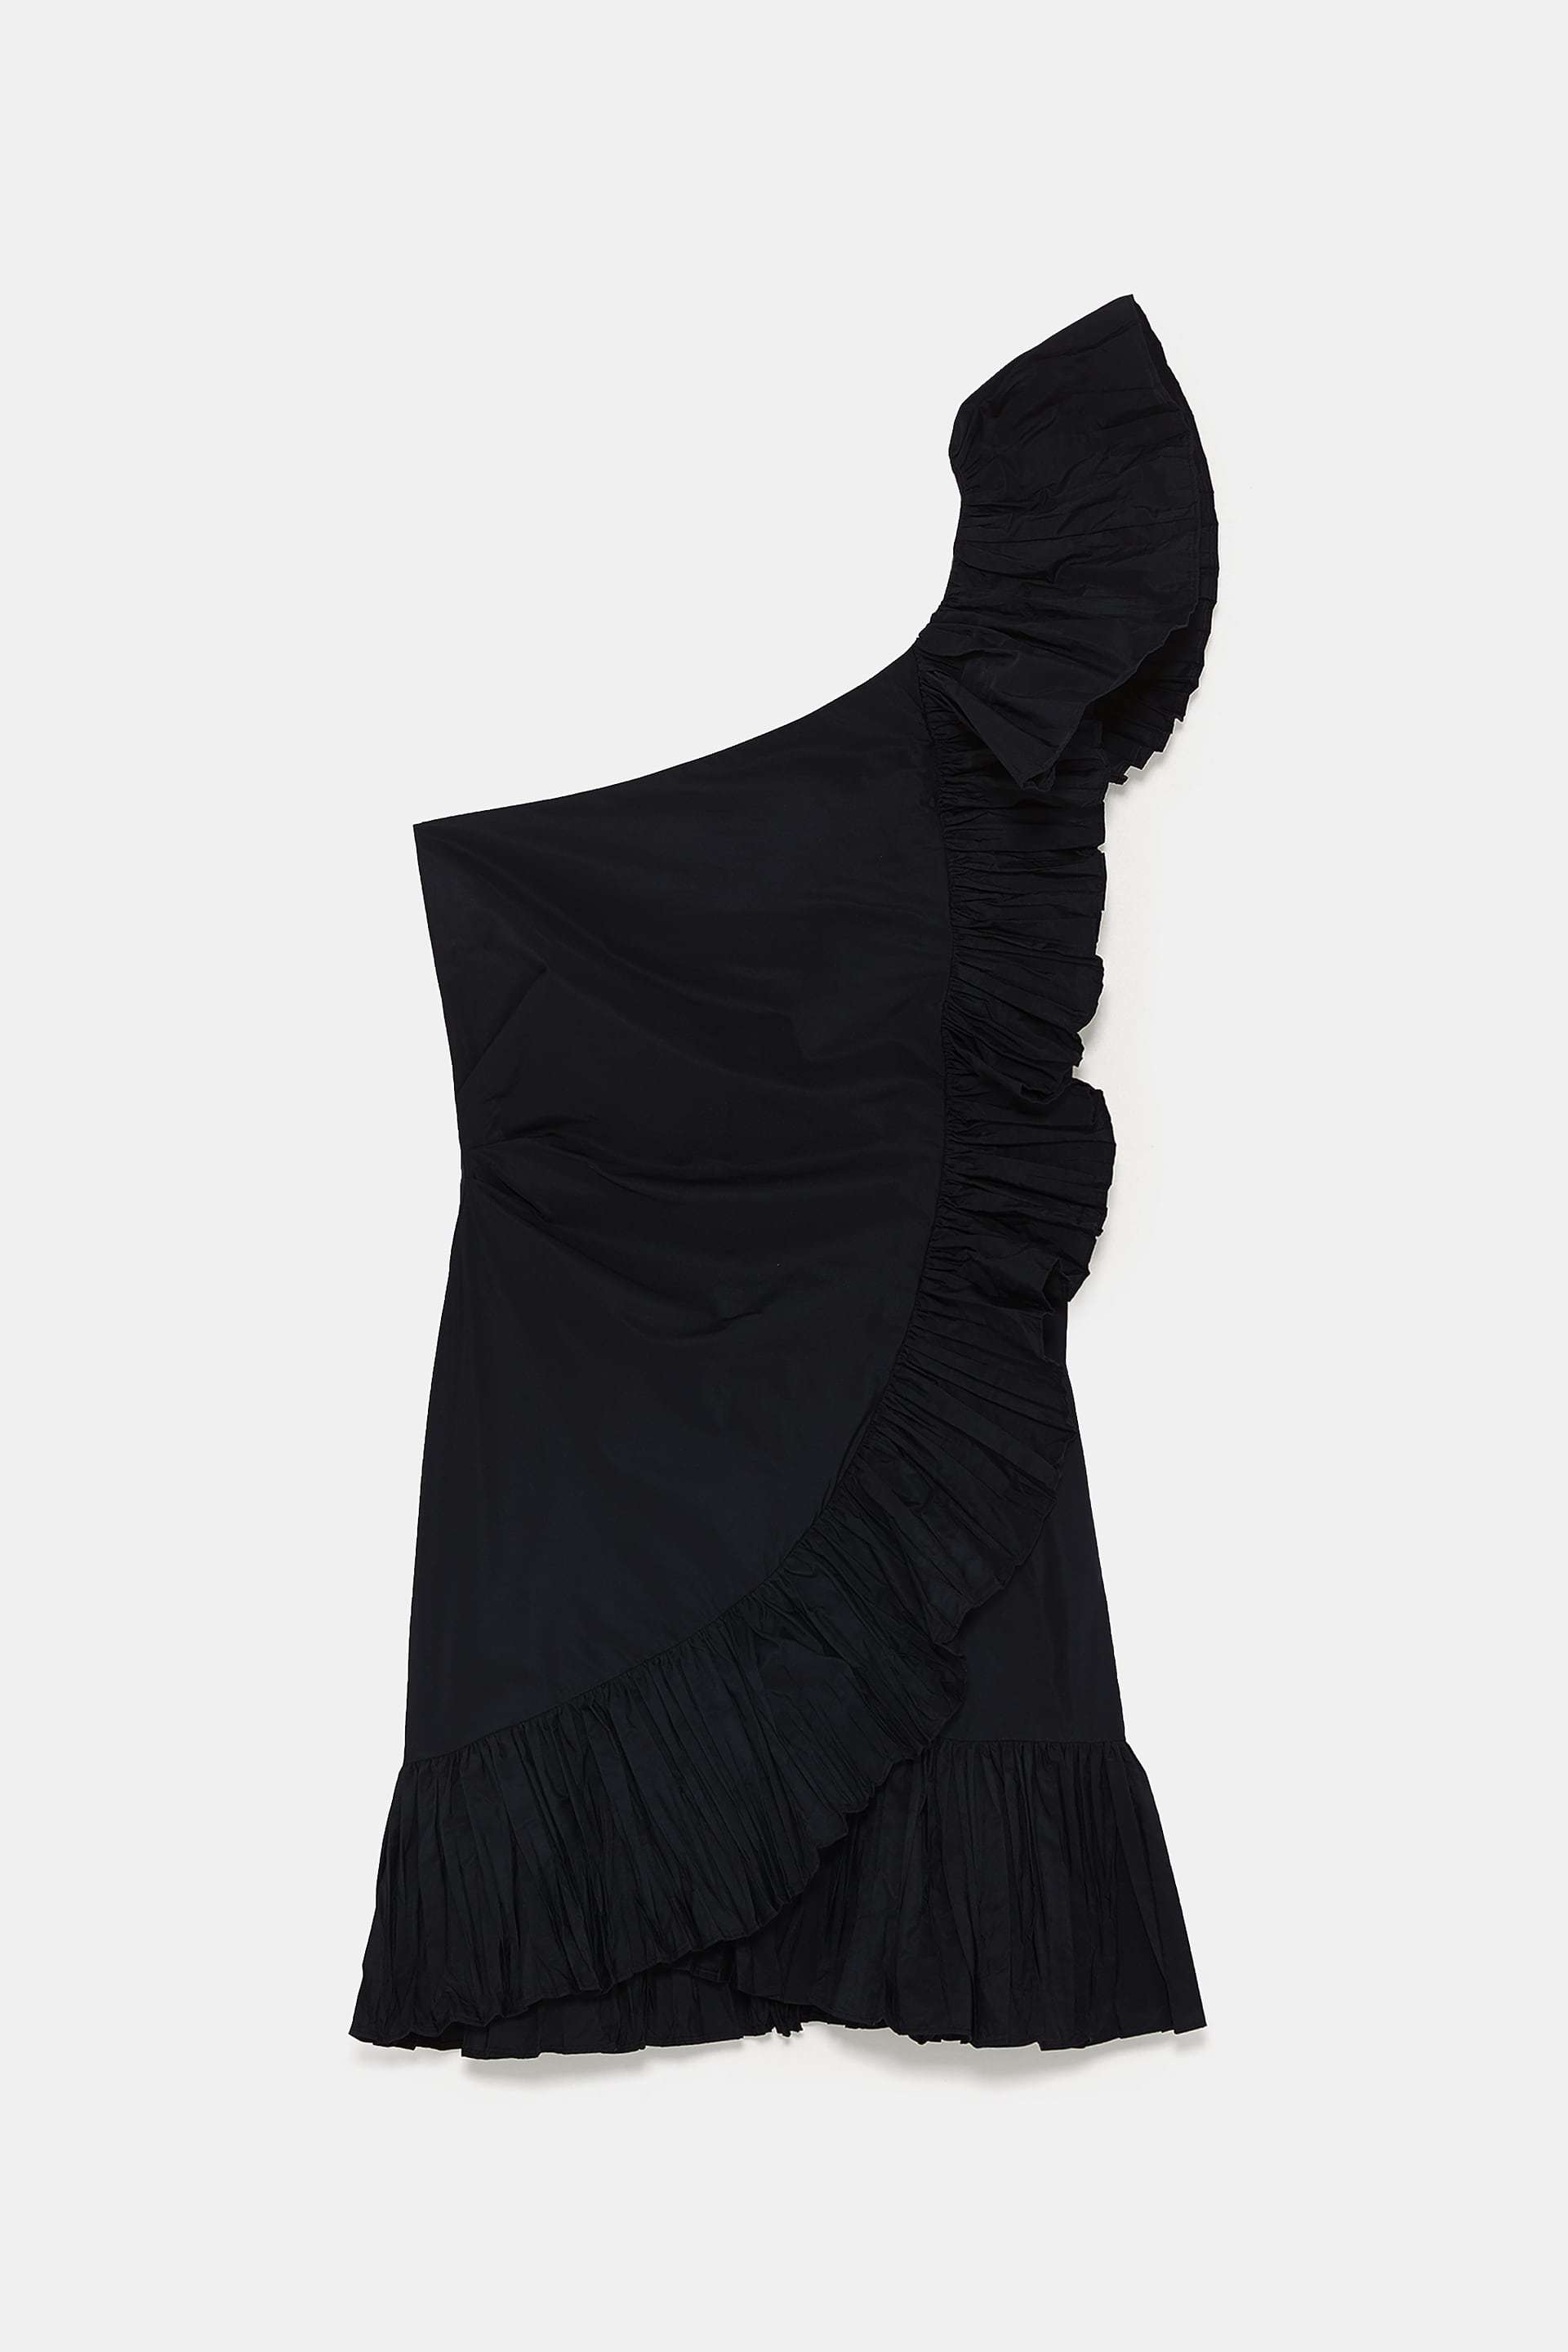 Vestido de Zara (39,95 euros).